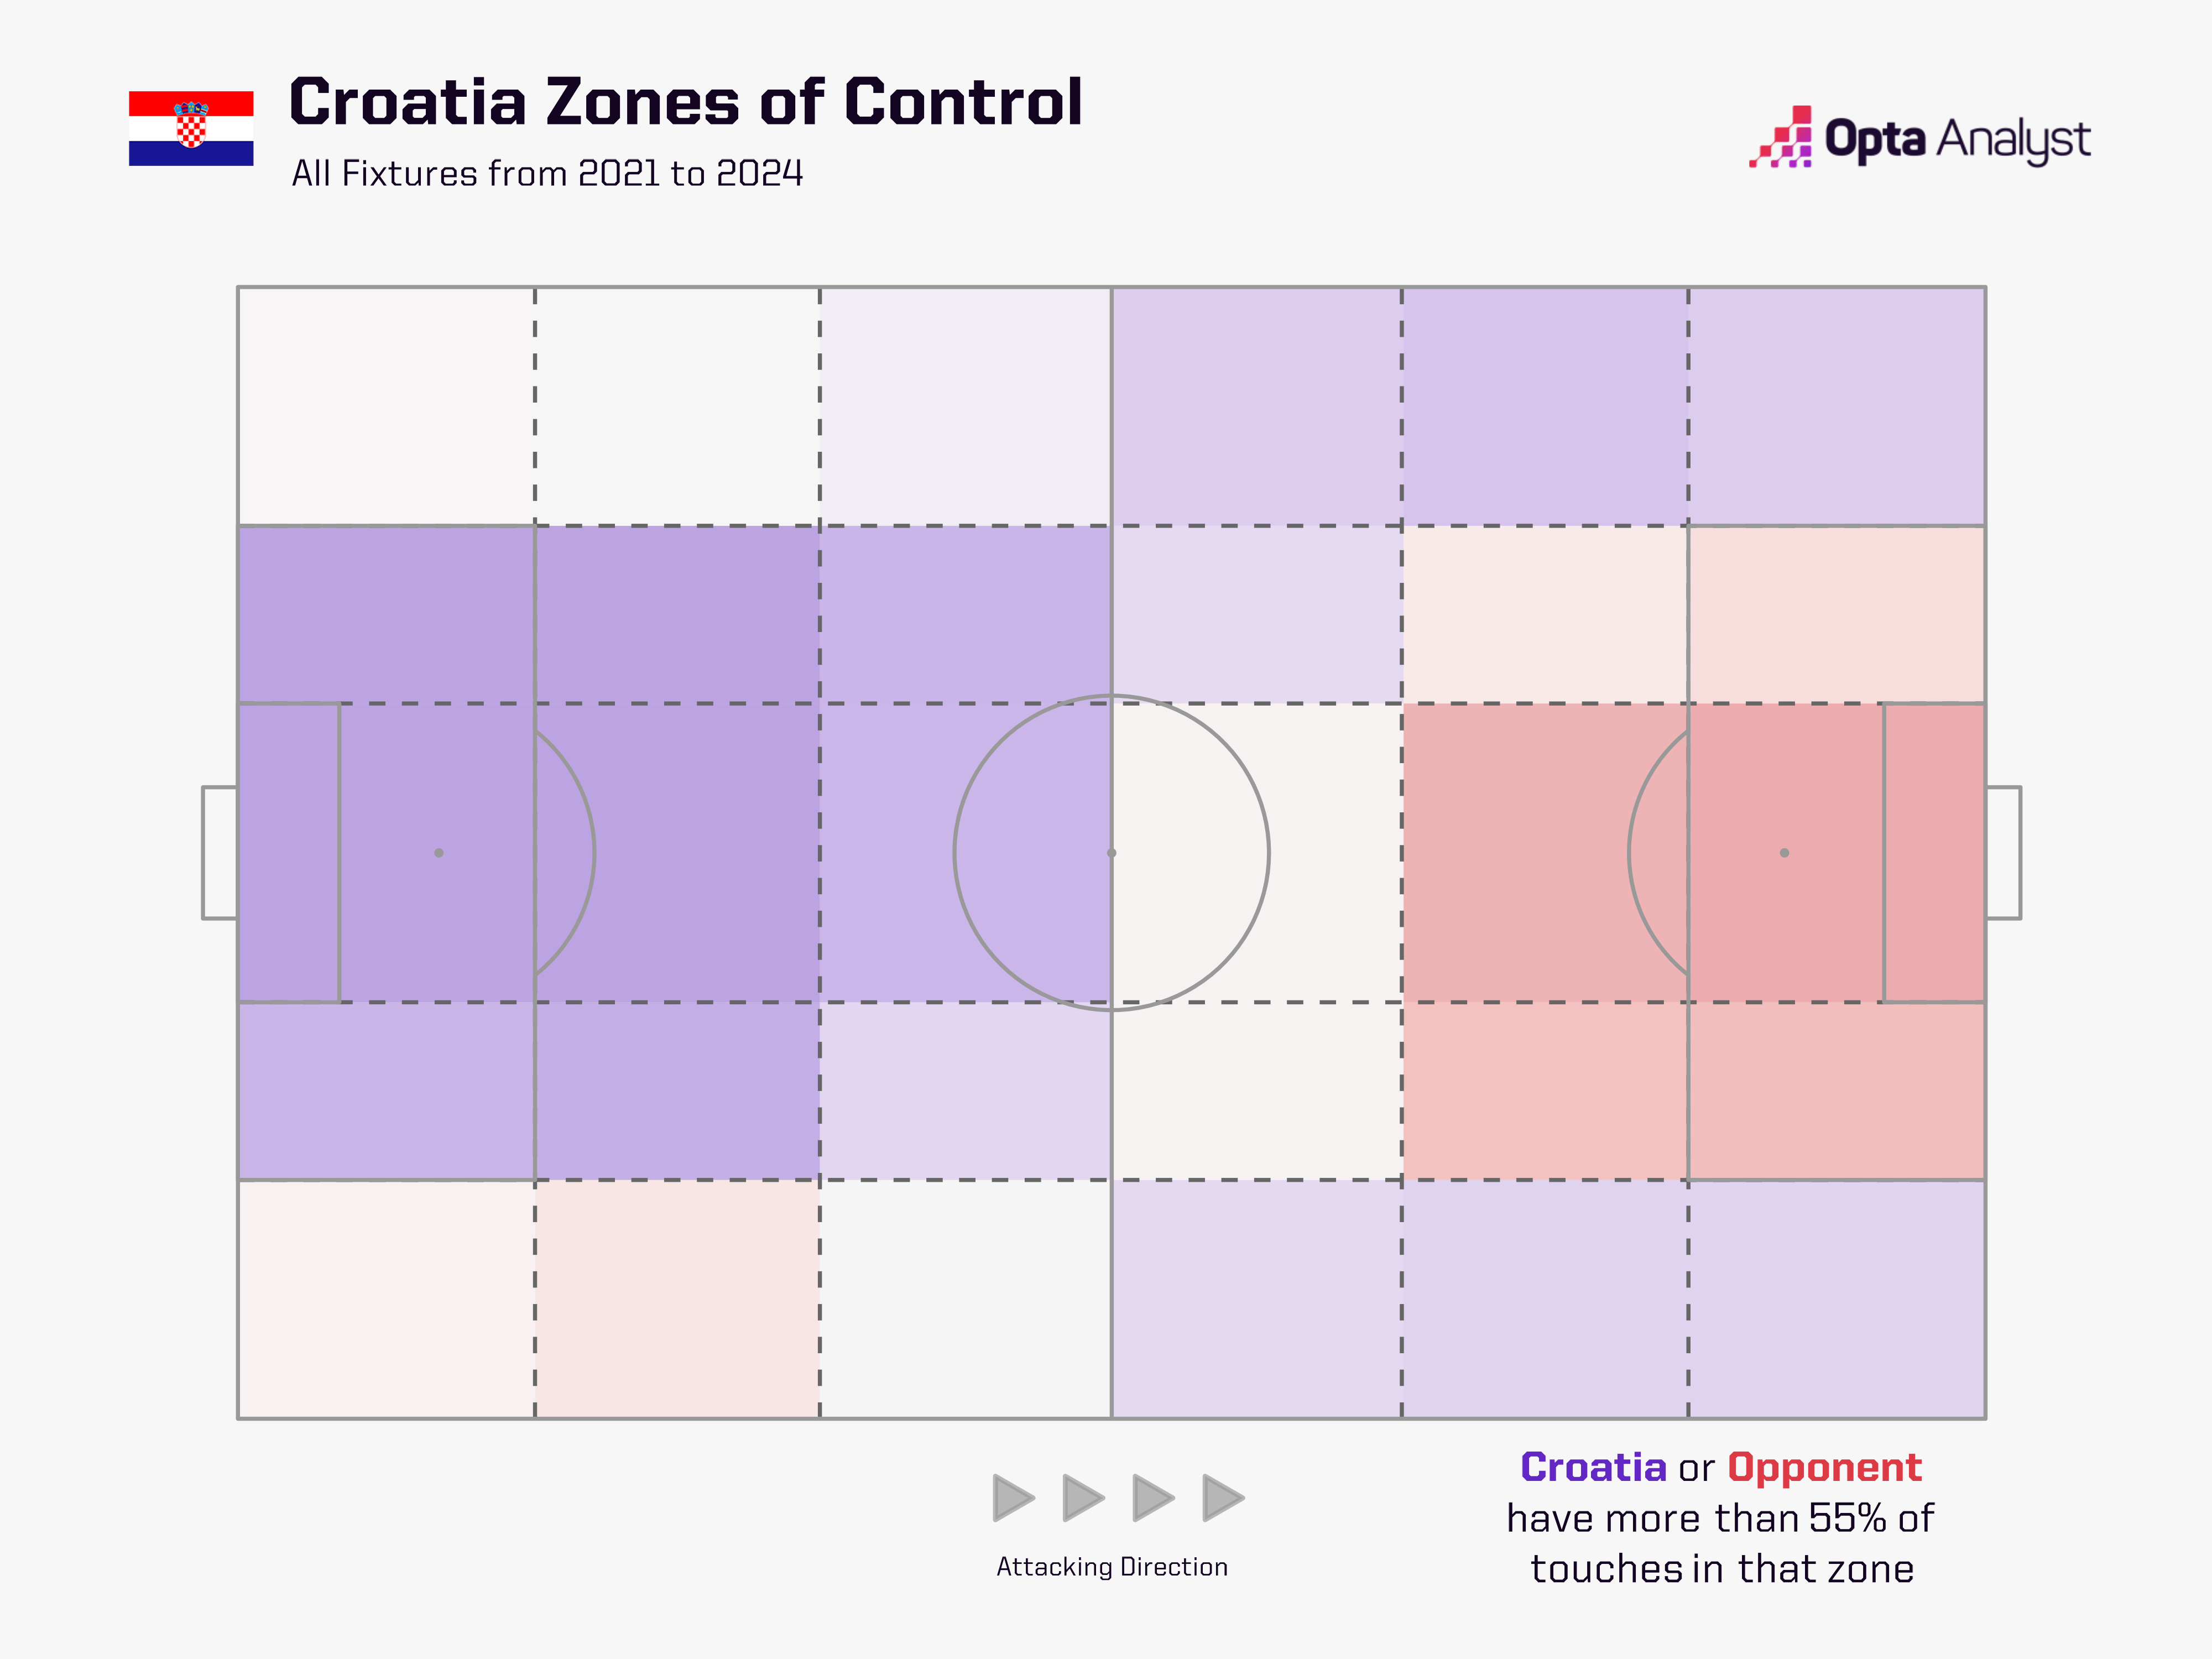 Croatia zones of control - all fixtures 2021-2024